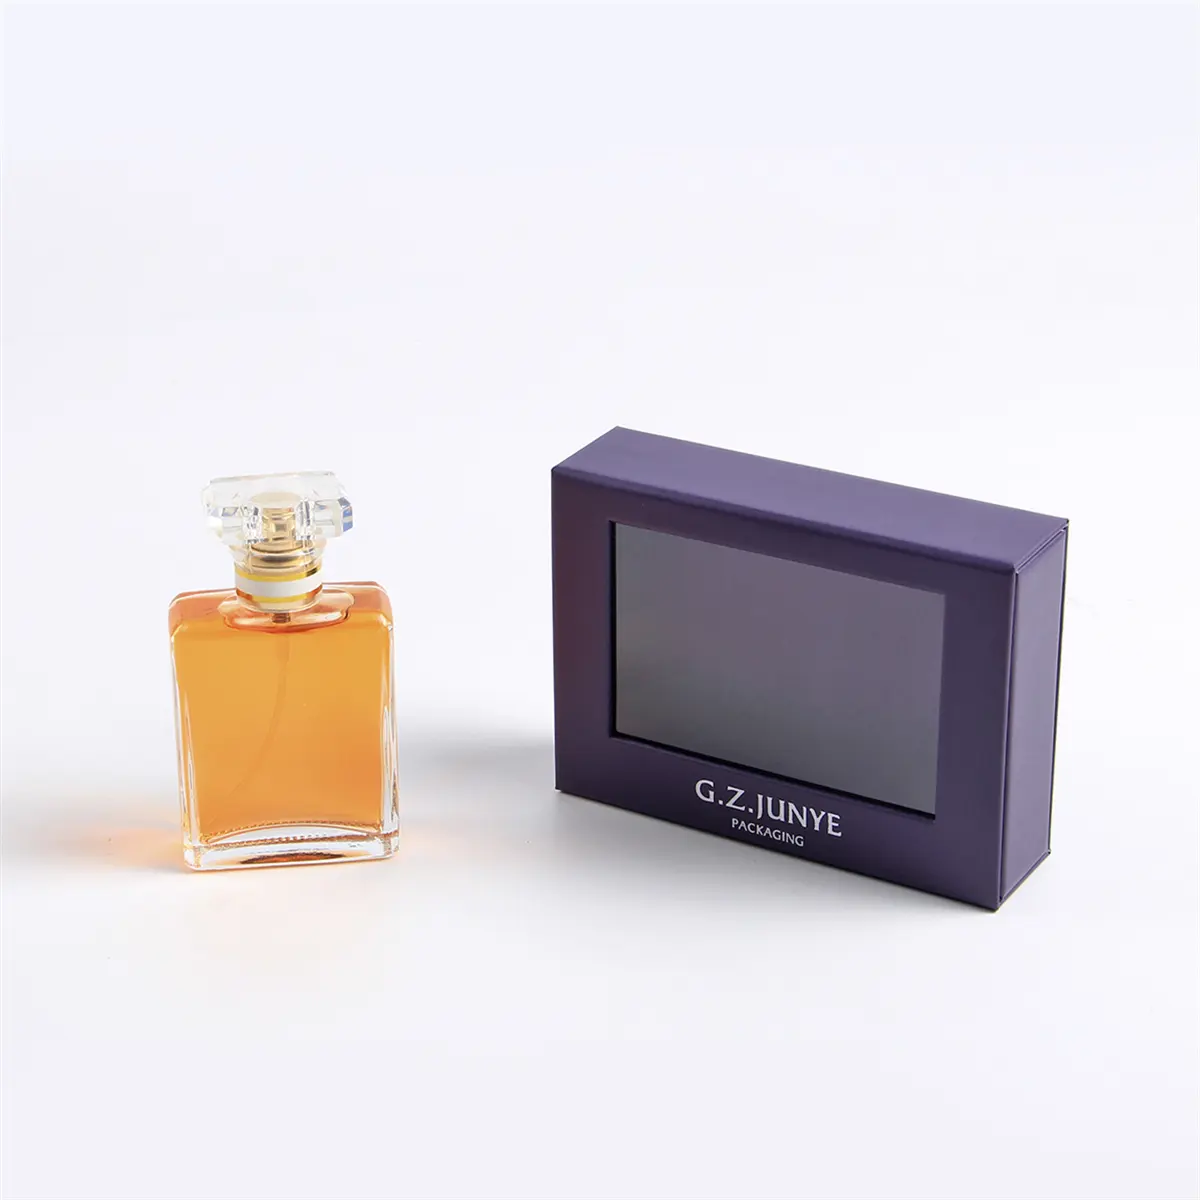 Fashion samply pengiriman cepat ramah perjalanan kualitas tinggi sampel besar barang berbentuk huruf 2ml untuk kotak parfum kertas mewah